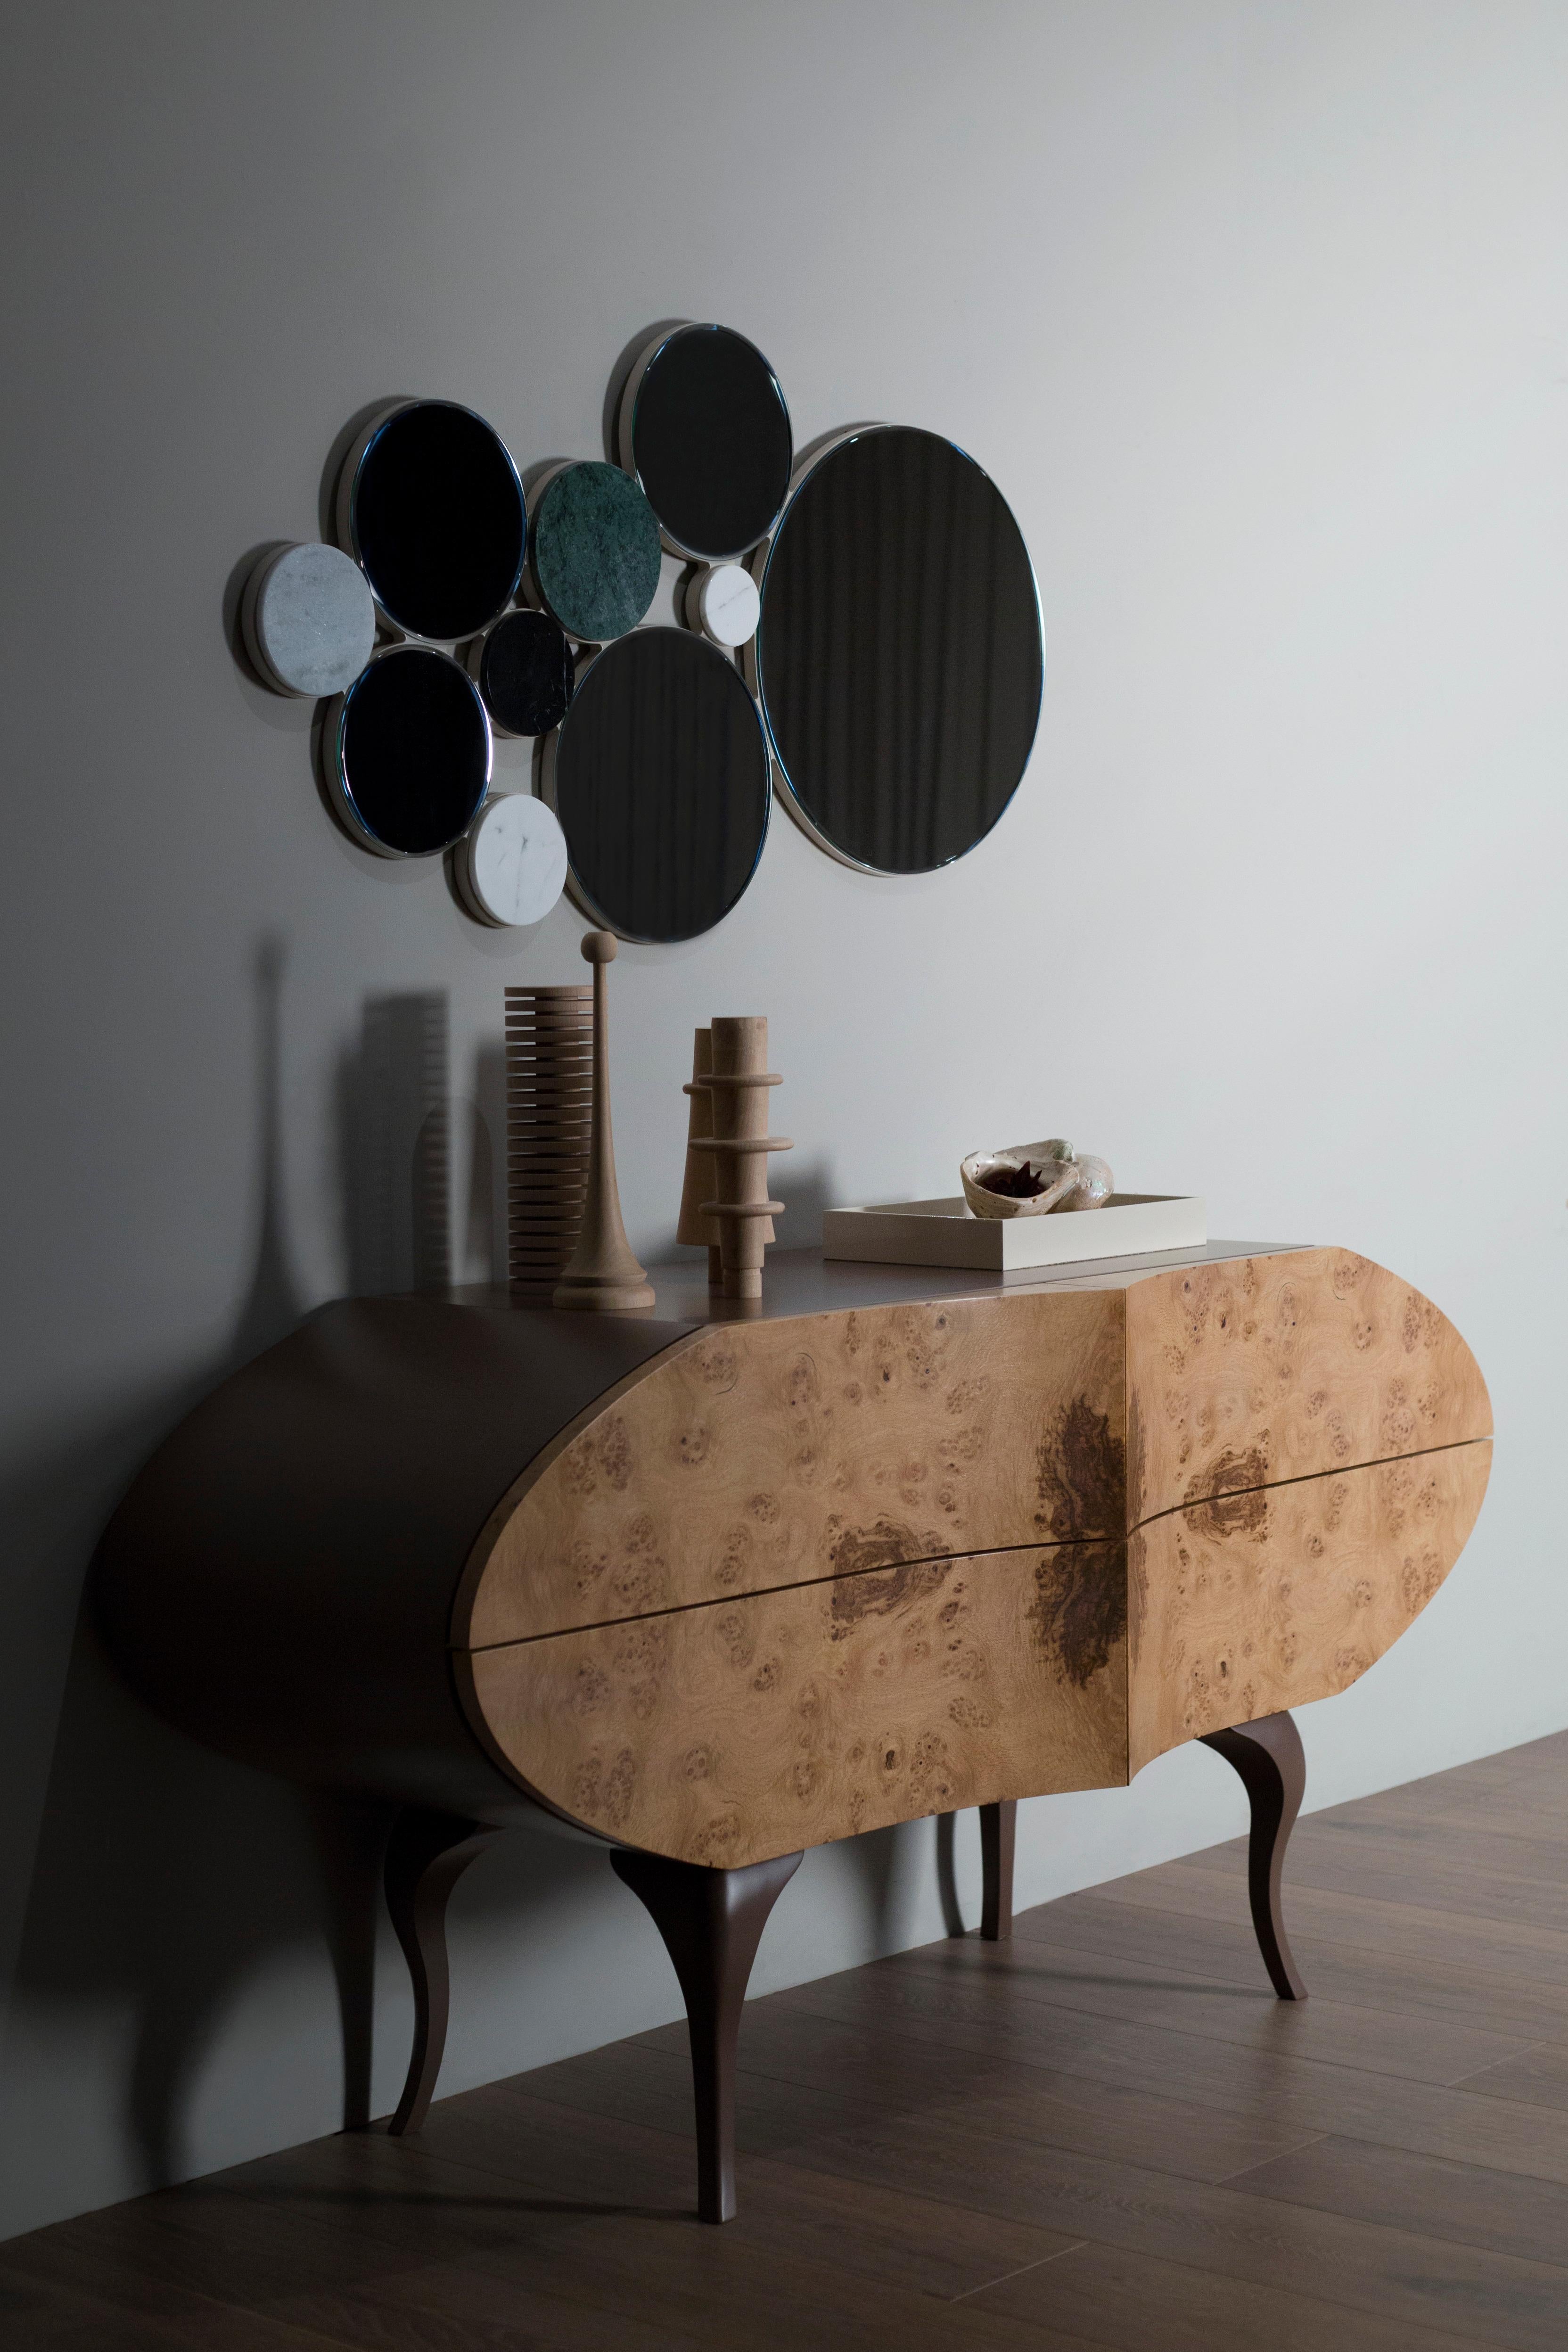 Beans Sideboard, Modern Collection'S, handgefertigt in Portugal - Europa von GF Modern.

Als wir dieses Sideboard mit vier Schubladen aus Holz entwarfen, suchten wir nach einem schlichten und eleganten Stück, das sich leicht einfügen würde. Eine